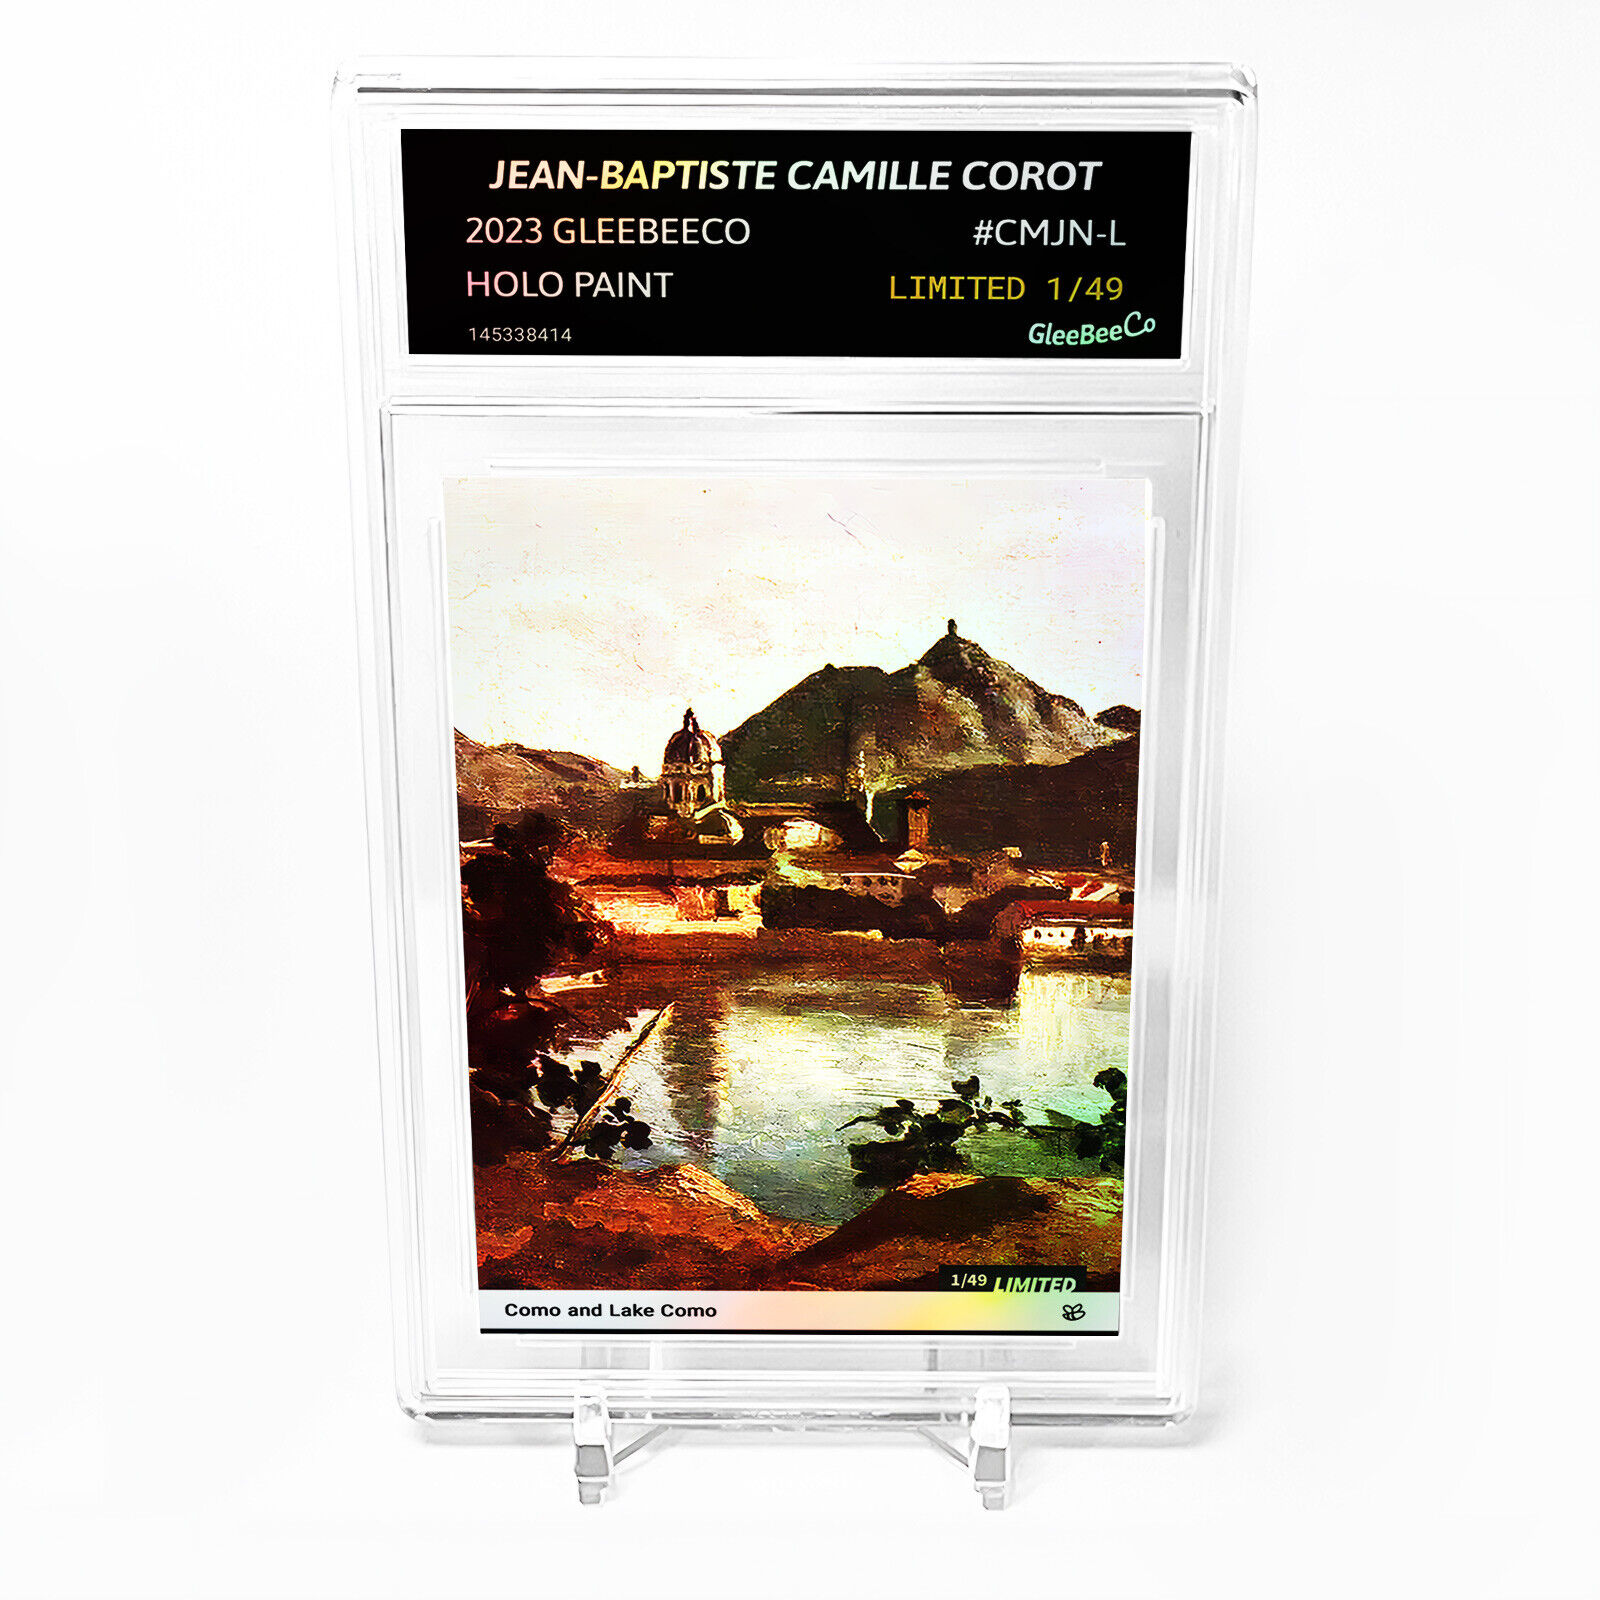 COMO AND LAKE COMO 2023 GleeBeeCo Card Jean-Baptiste Camille Corot #CMJN-L /49